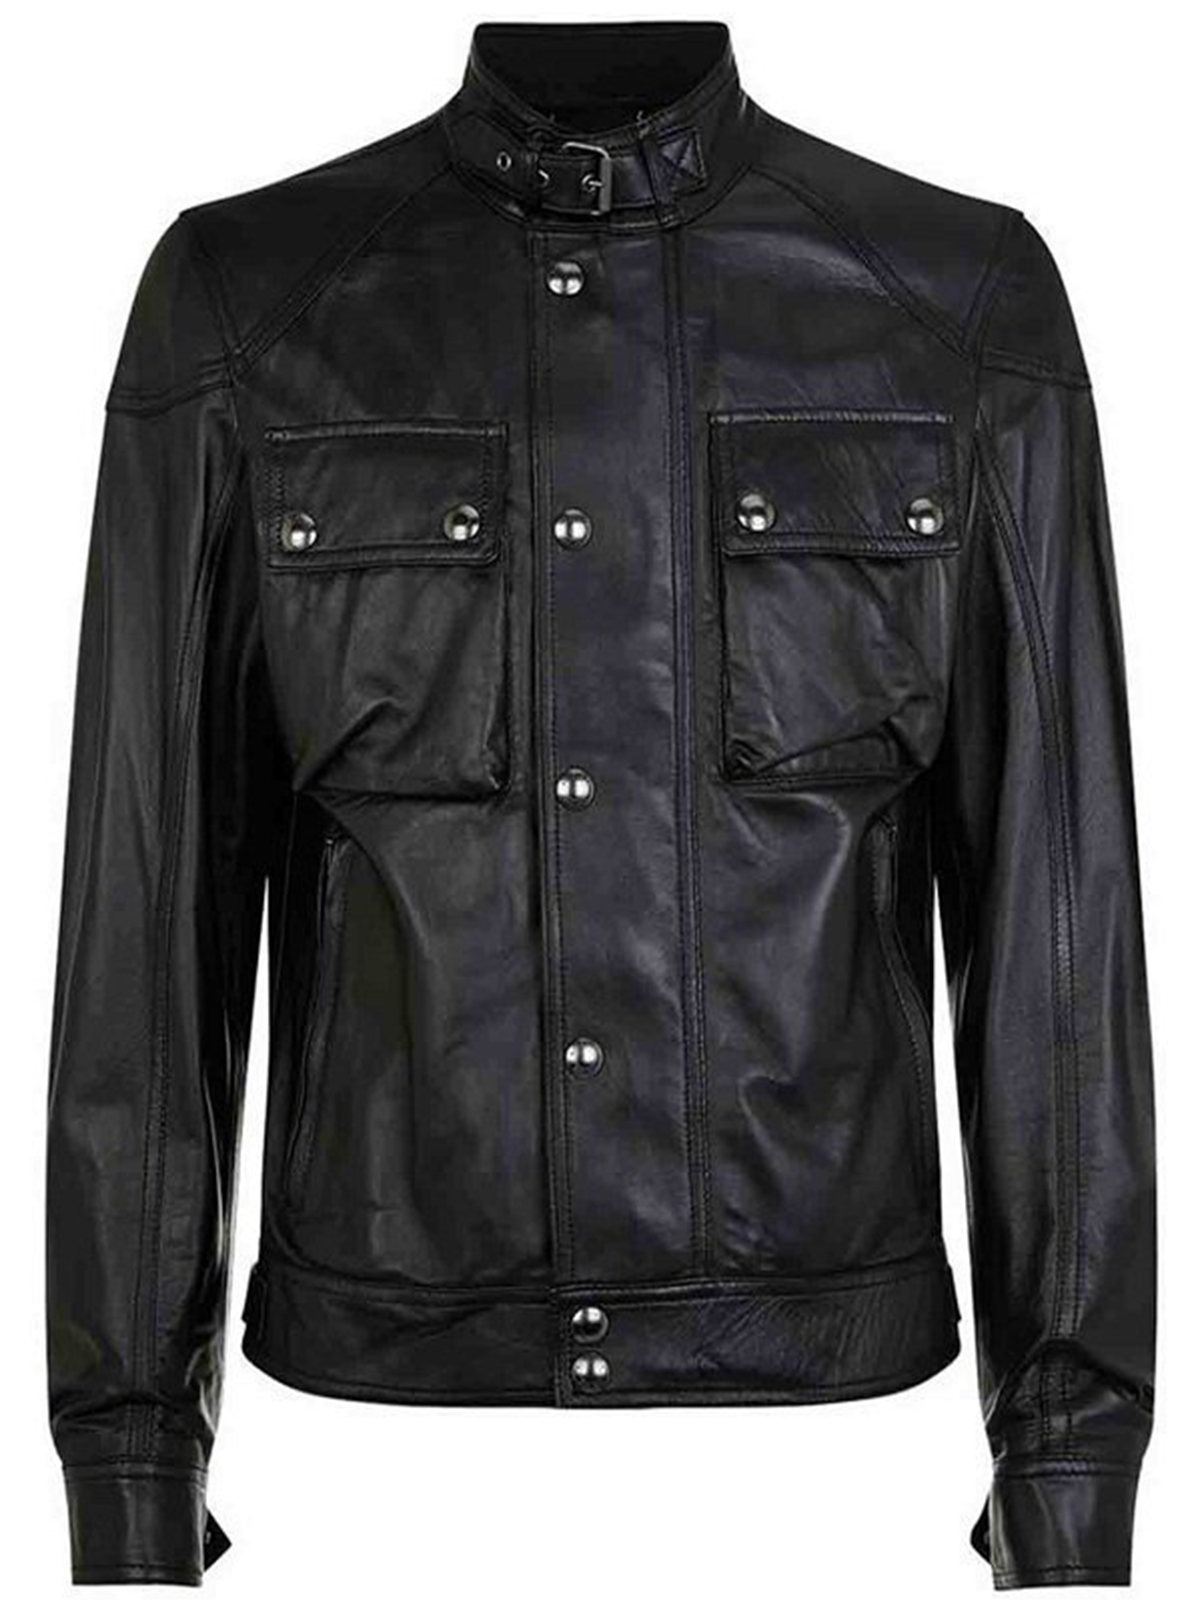 Richard Armitage Hannibal Black Leather Jacket